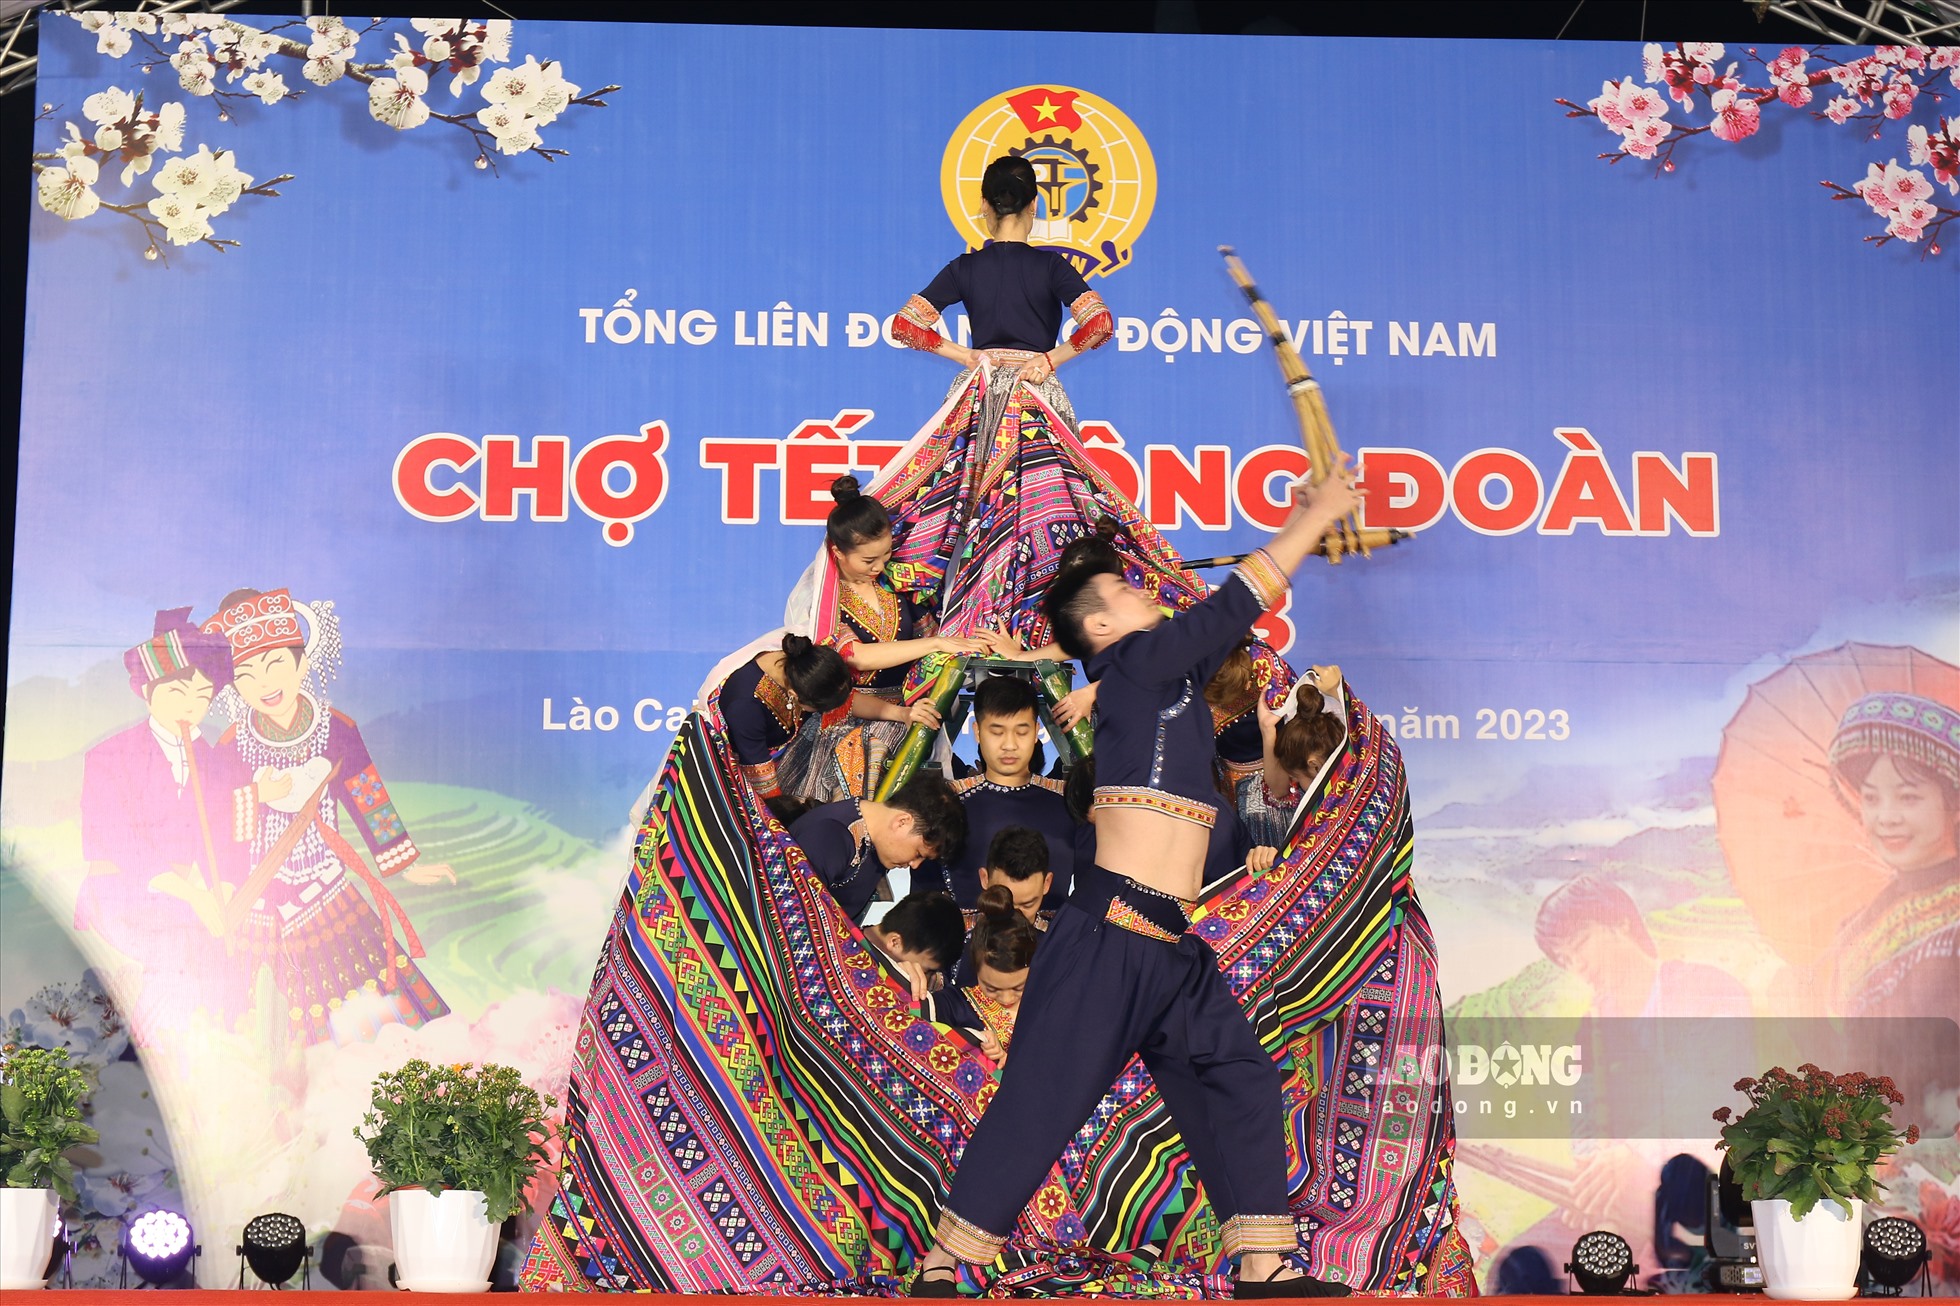 Chợ Tết Công đoàn cho người lao động được tổ chức tại Sân vận động huyện Phù Yên và diễn ra trong 2 ngày 7 - 8.1. Đây là một trong những hoạt động chăm lo cho đoàn viên, người lao động nhân dịp Tết Nguyên đán Quý Mão 2023 của LĐLĐ tỉnh Sơn La và Tổng LĐLĐ Việt Nam.